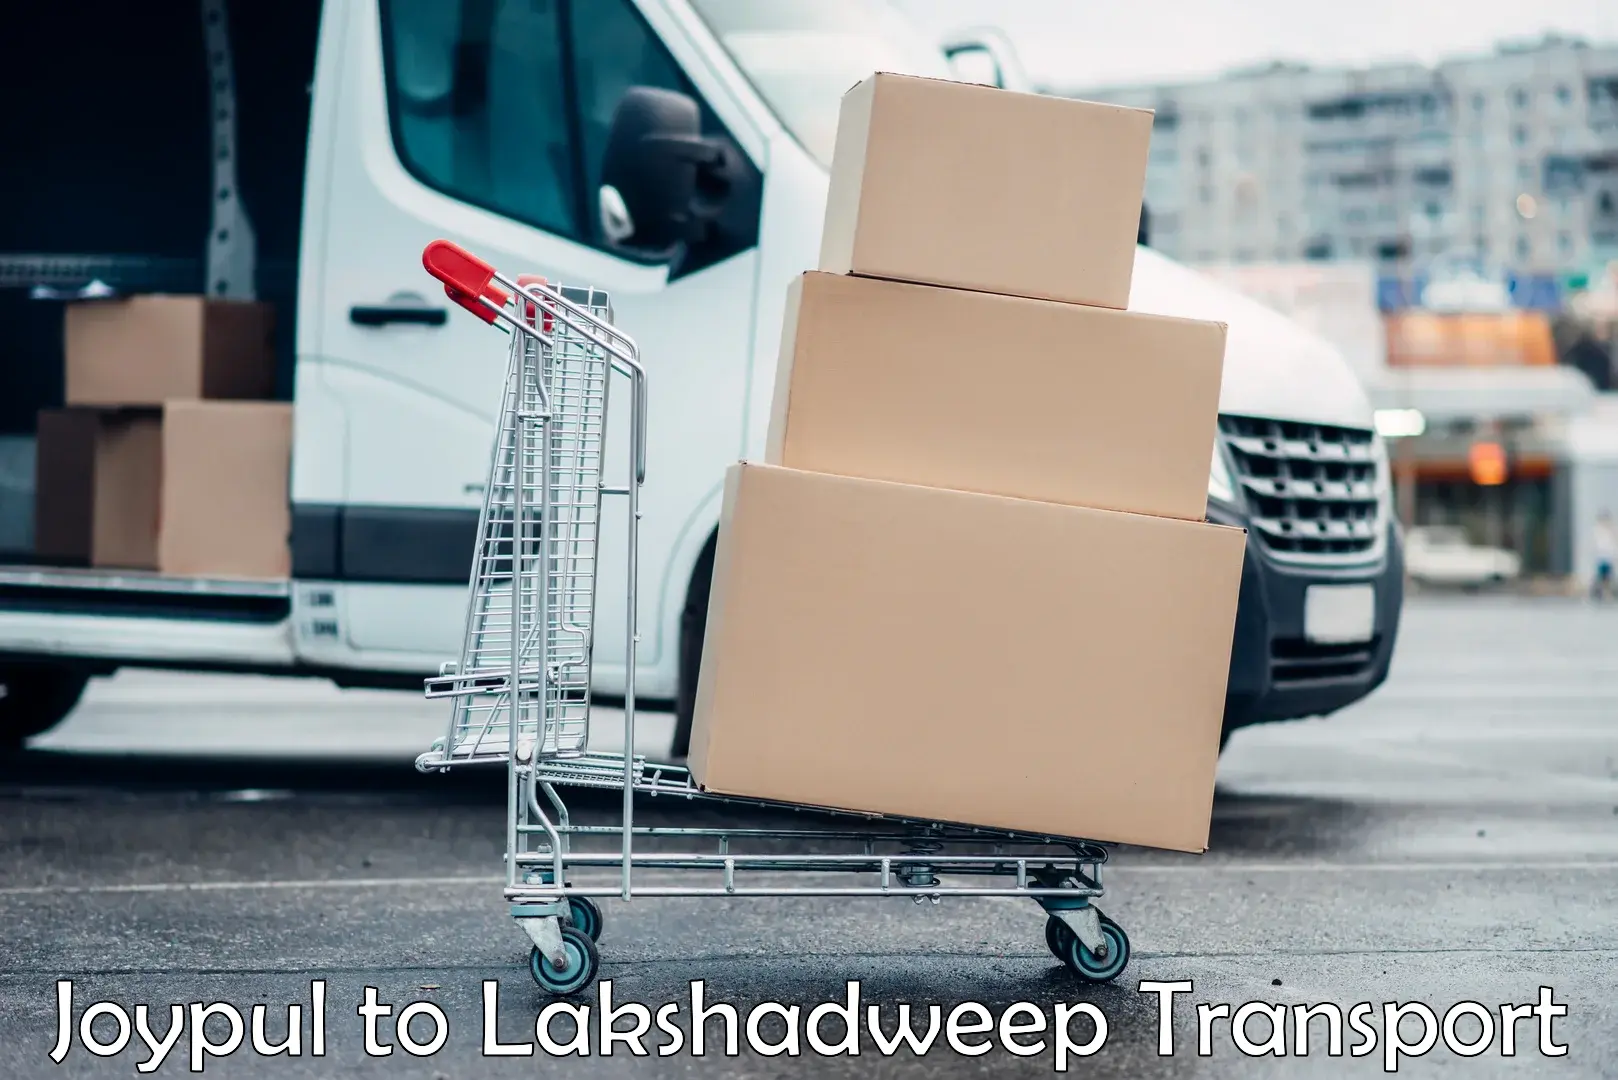 Furniture transport service Joypul to Lakshadweep